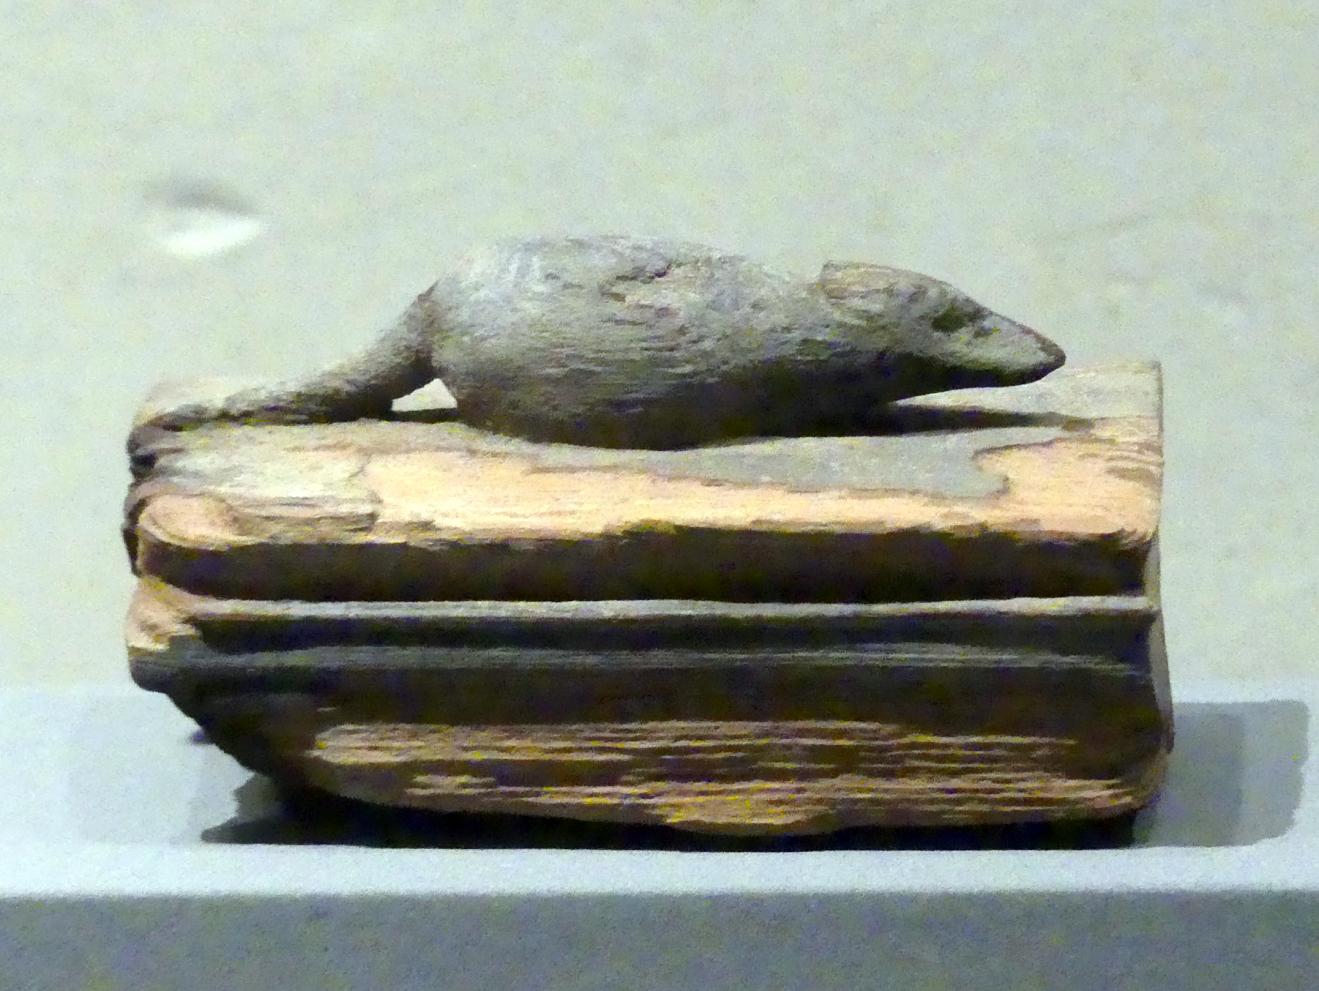 Zwei Särge für Spitzmäuse, Spätzeit, 360 - 342 v. Chr., 600 - 300 v. Chr., Bild 1/2